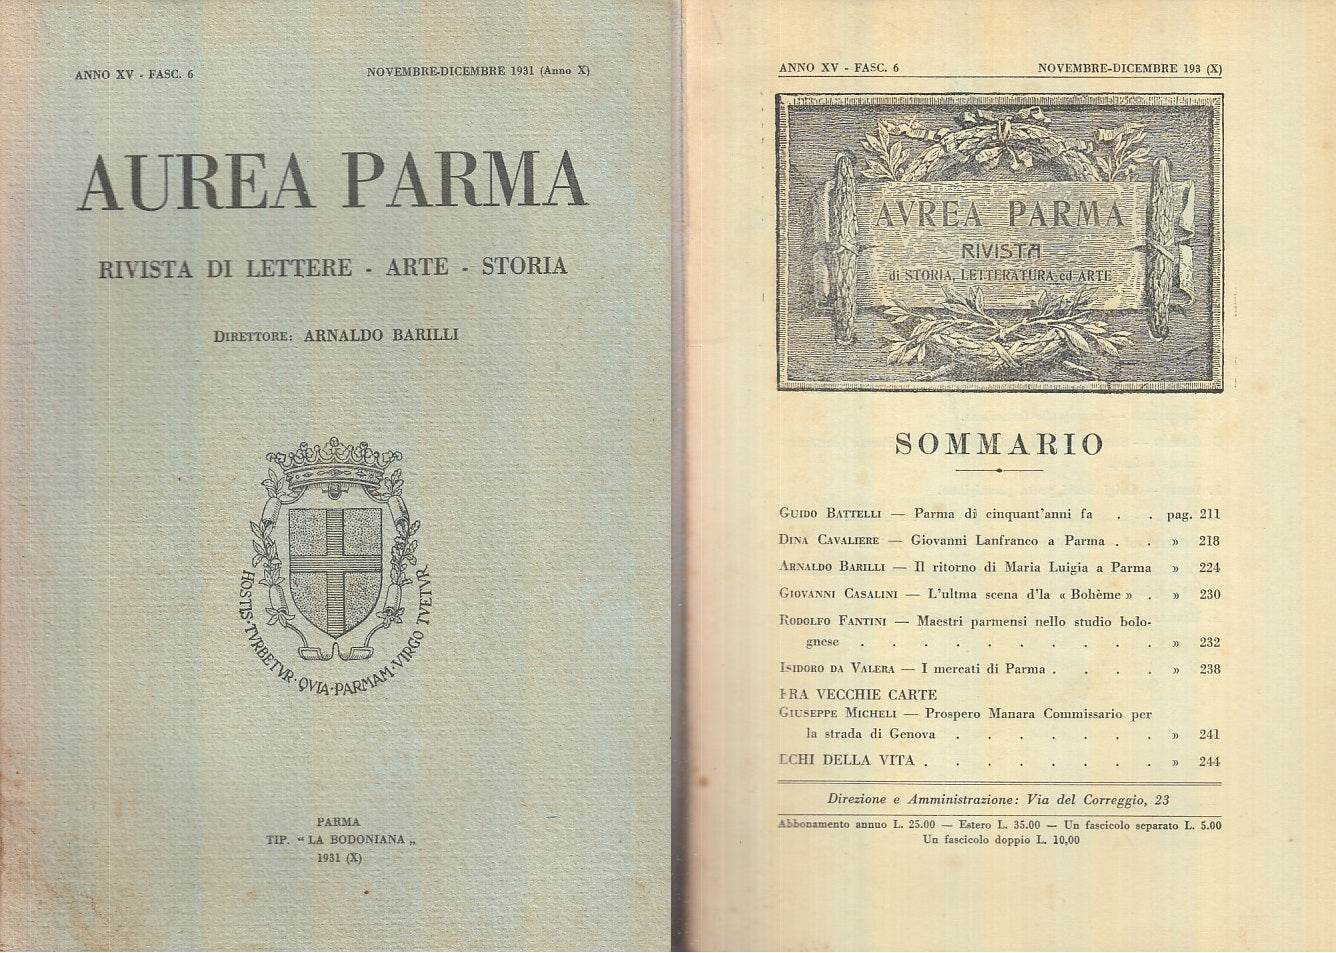 LR- RIVISTA AUREA PARMA ANNO XV FASC. 6 -- BODONIANA --- 1931 - B - XFS55